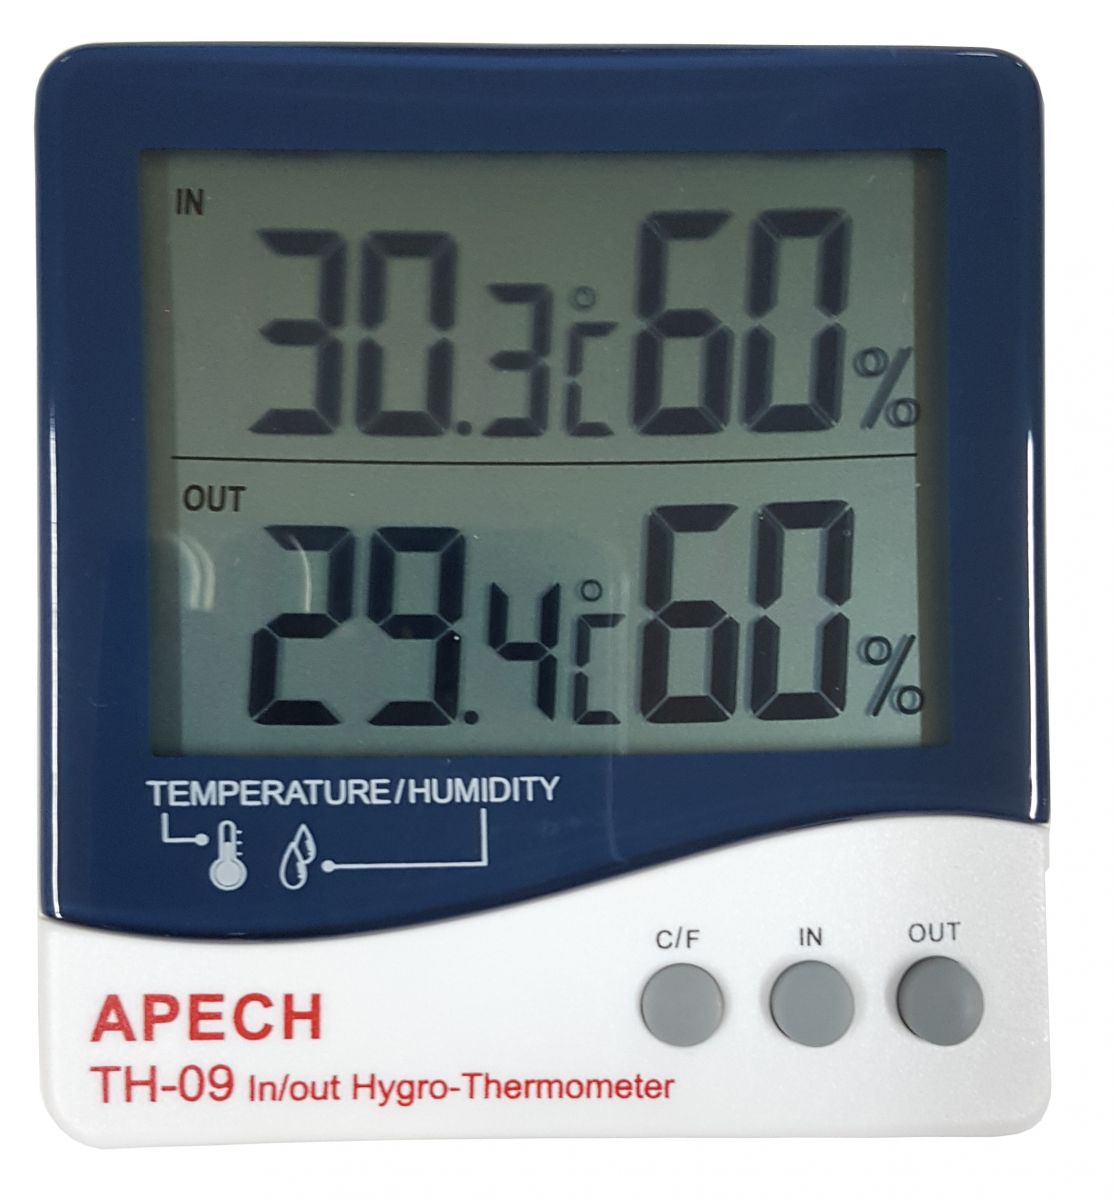 Thiết bị đô nhiệt độ, độ ẩm APECH TH-09